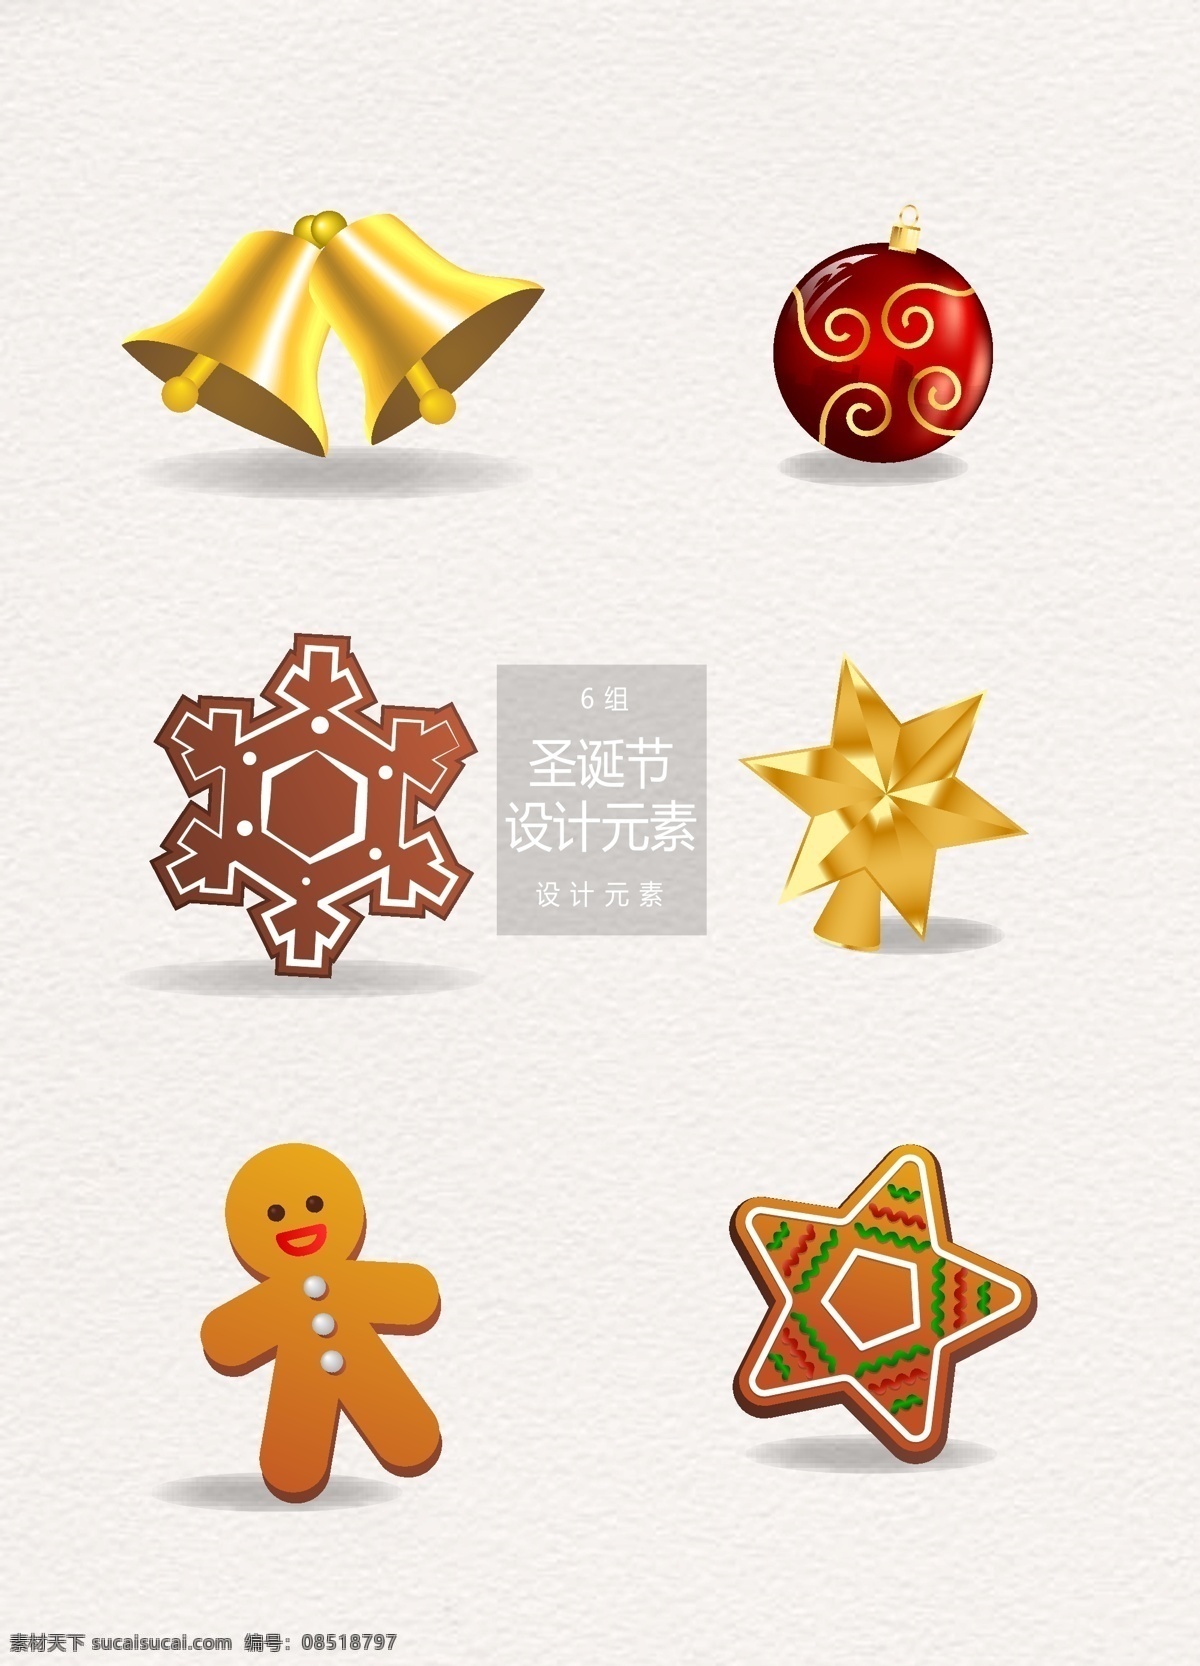 圣诞节 装饰设计 元素 圣诞节装饰 圣诞球 铃铛 五角星 圣诞 姜饼人 圣诞饼干